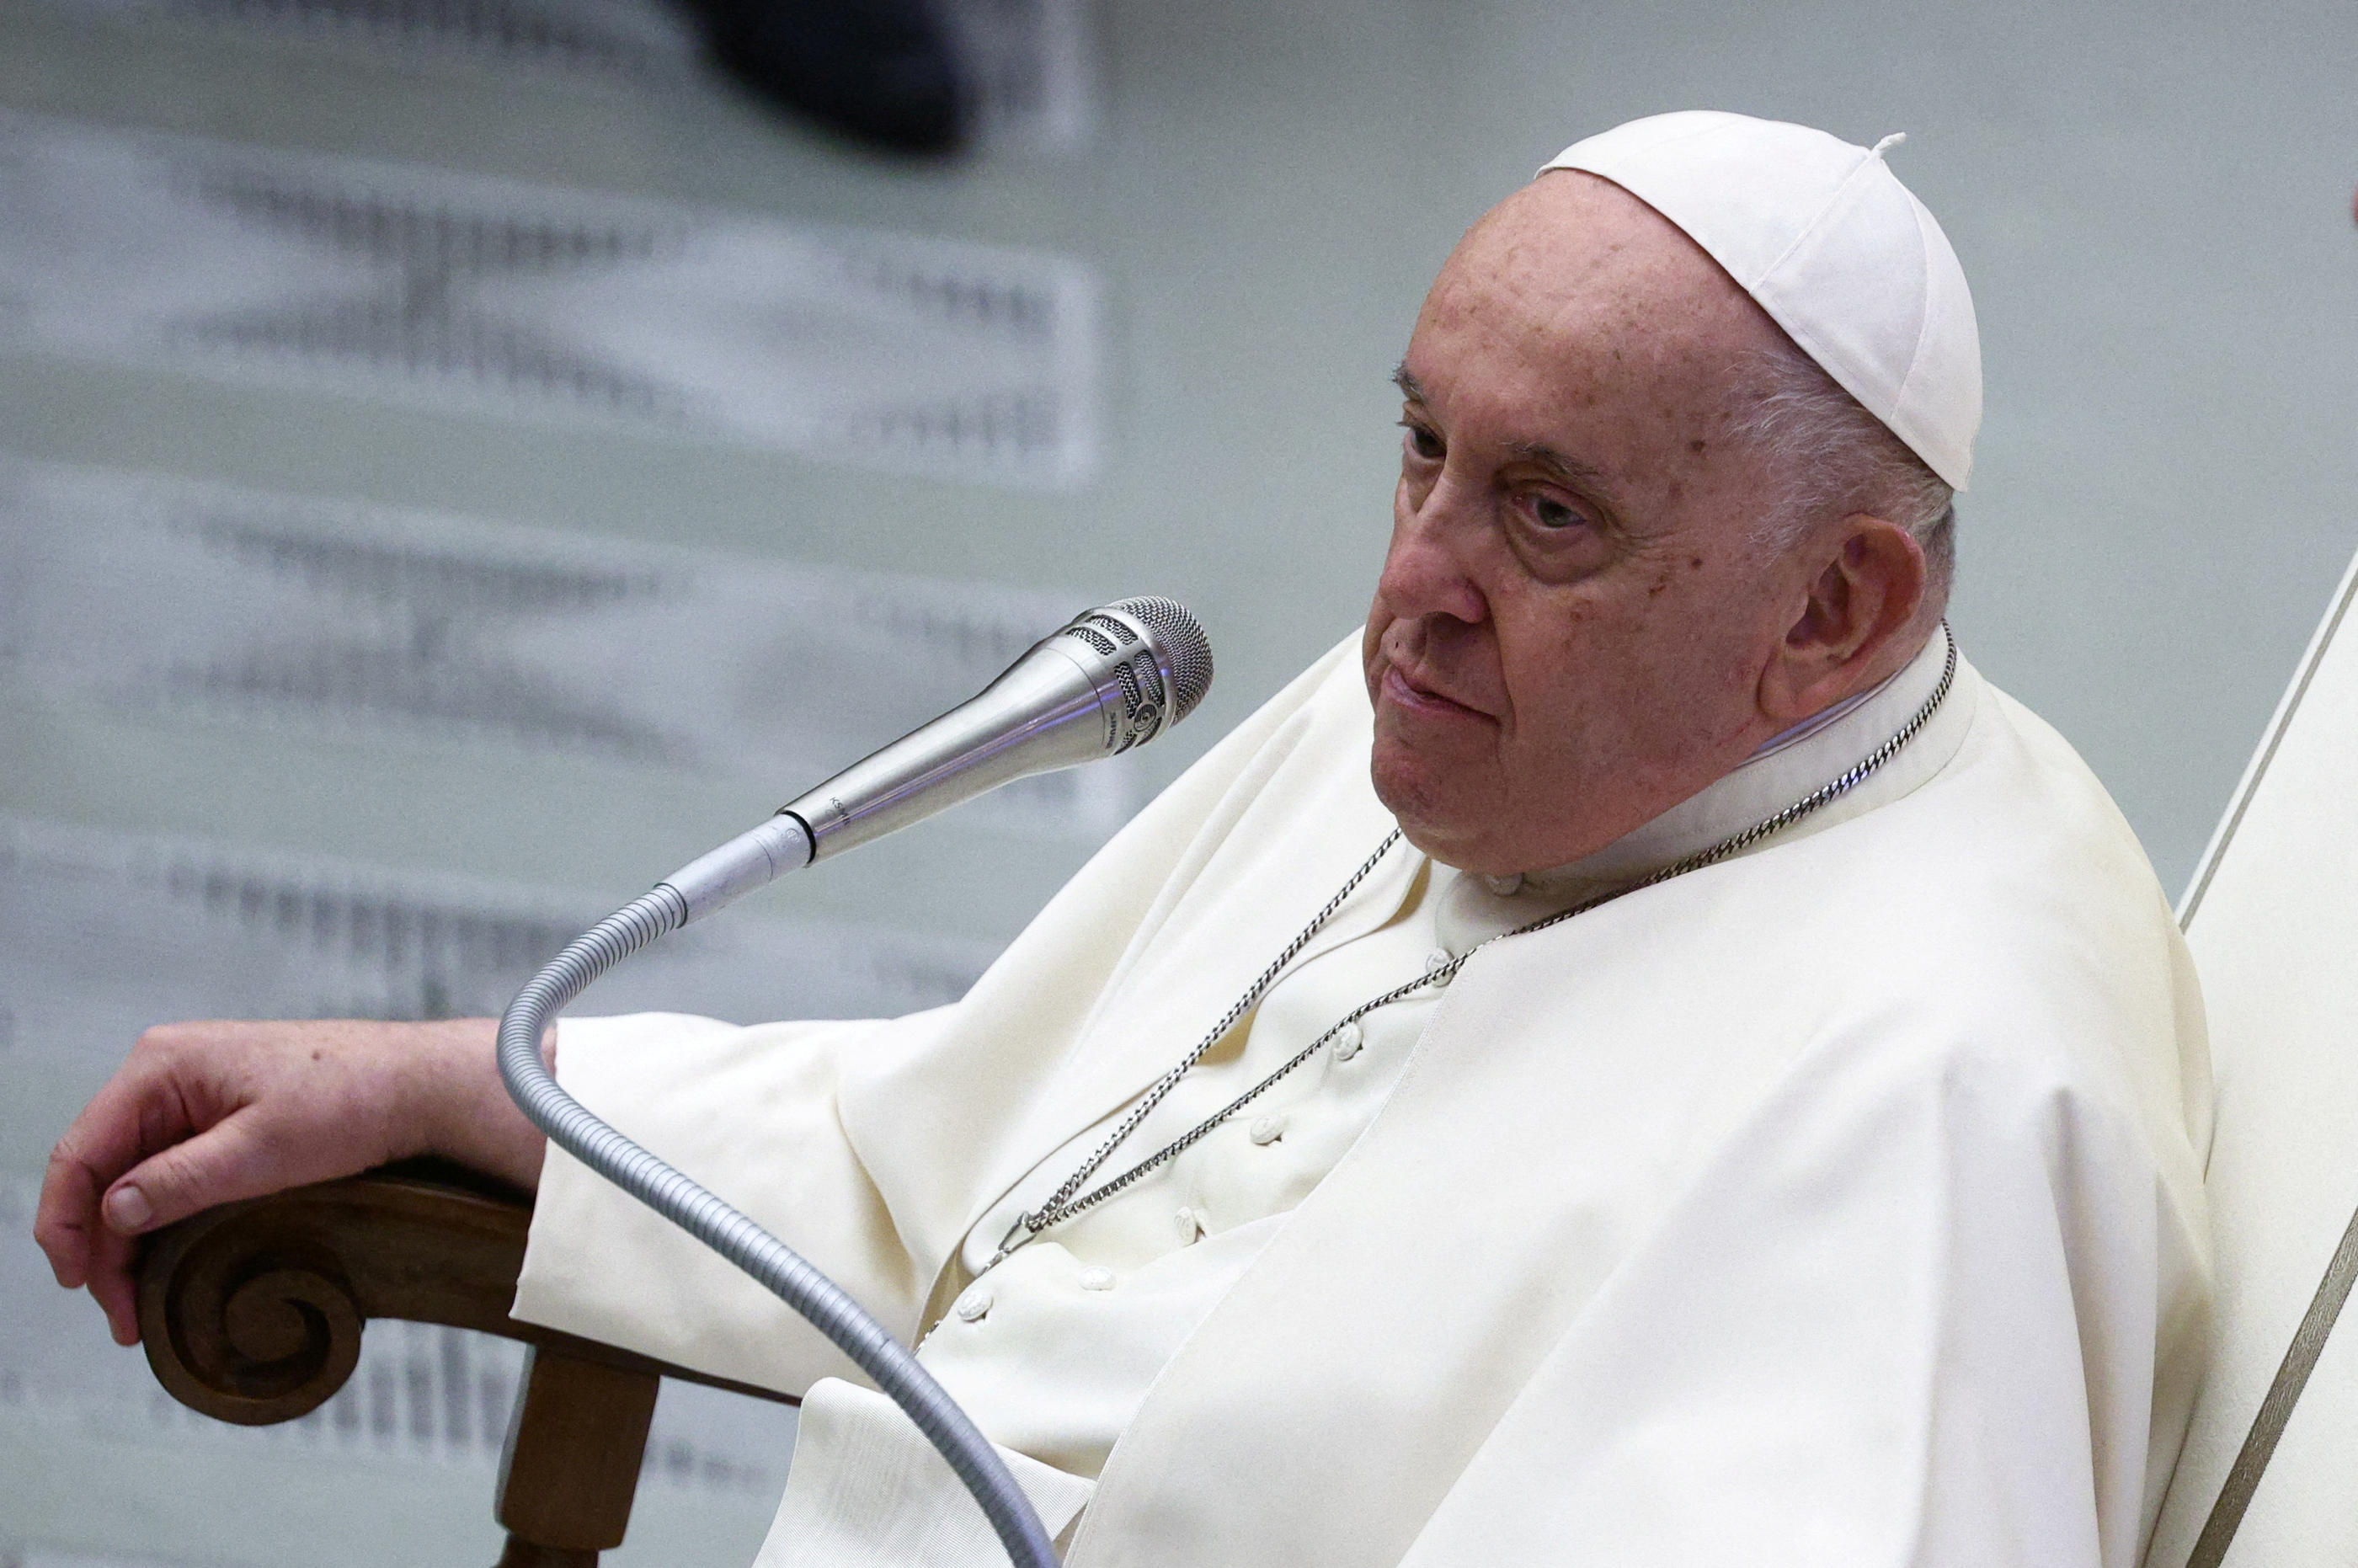 Le pape François lors d'une réunion au Vatican, le 30 novembre. REUTERS/Guglielmo Mangiapane/File Photo